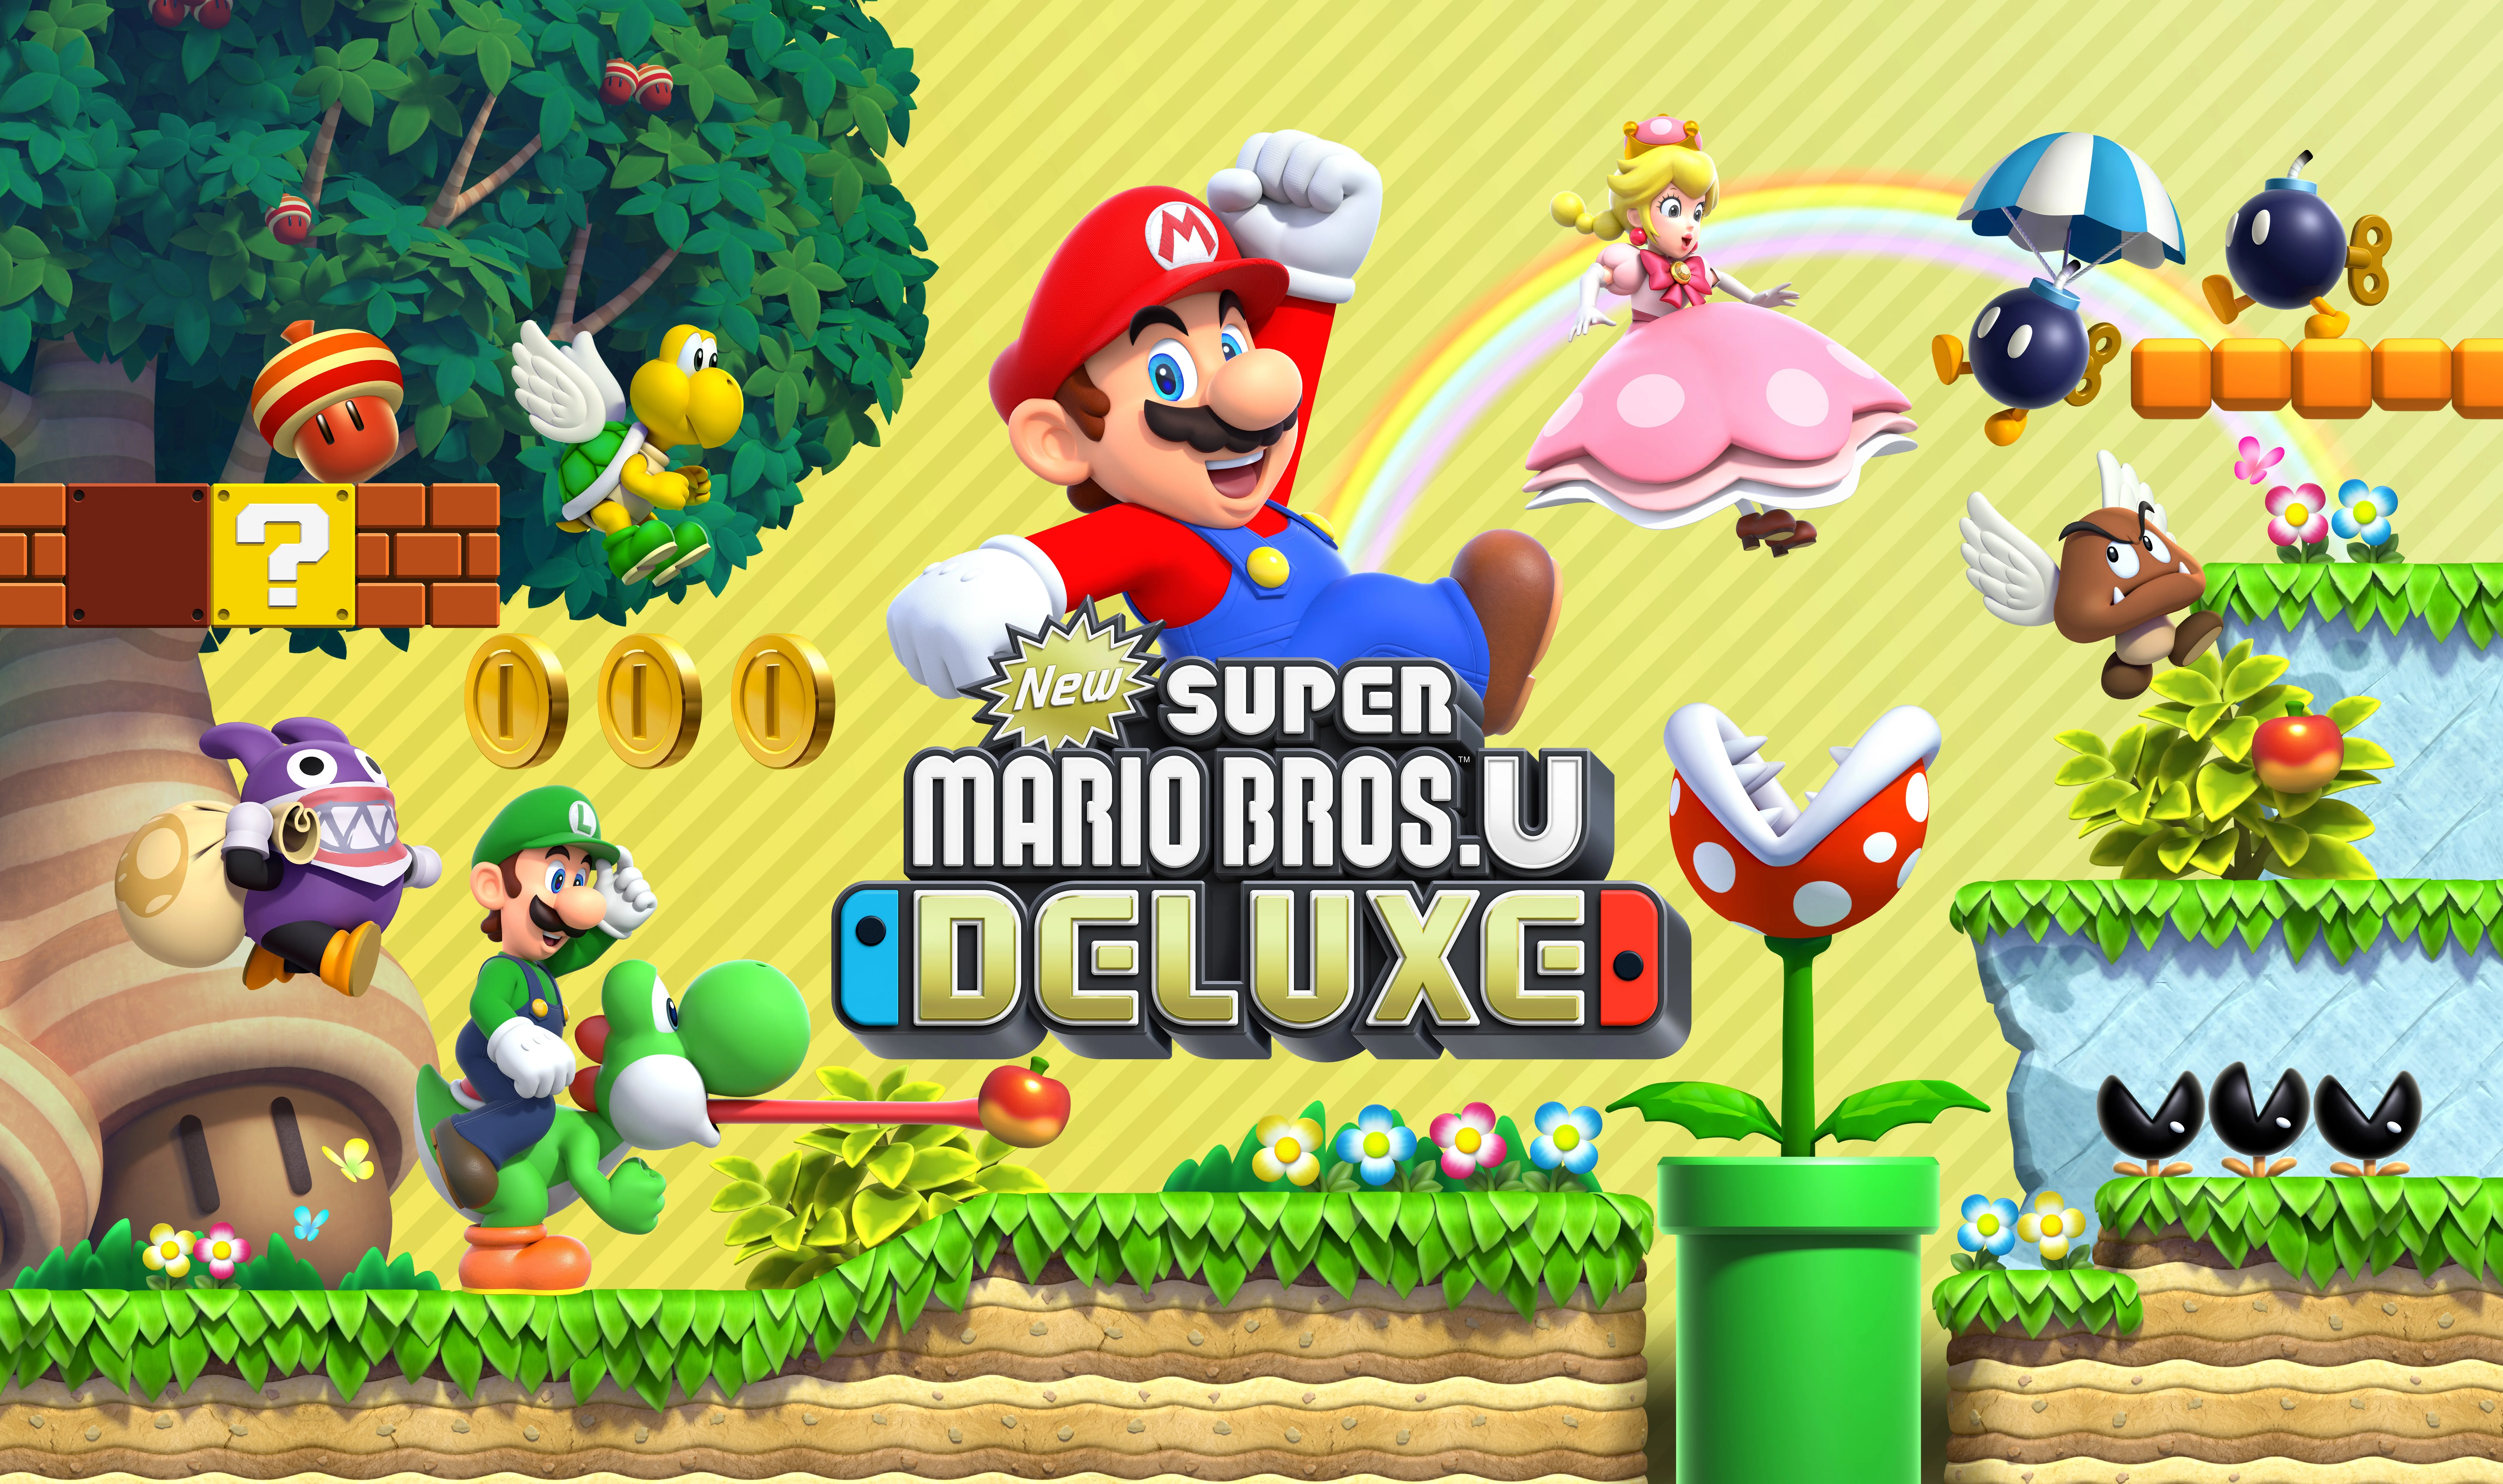 Mario deluxe nintendo. New super Mario Bros u Deluxe Nintendo Switch. Игра New super Mario Bros. U Deluxe. New super Mario Bros. U Deluxe для Nintendo Switch обложка. Игры super Mario Bros Нинтендо.